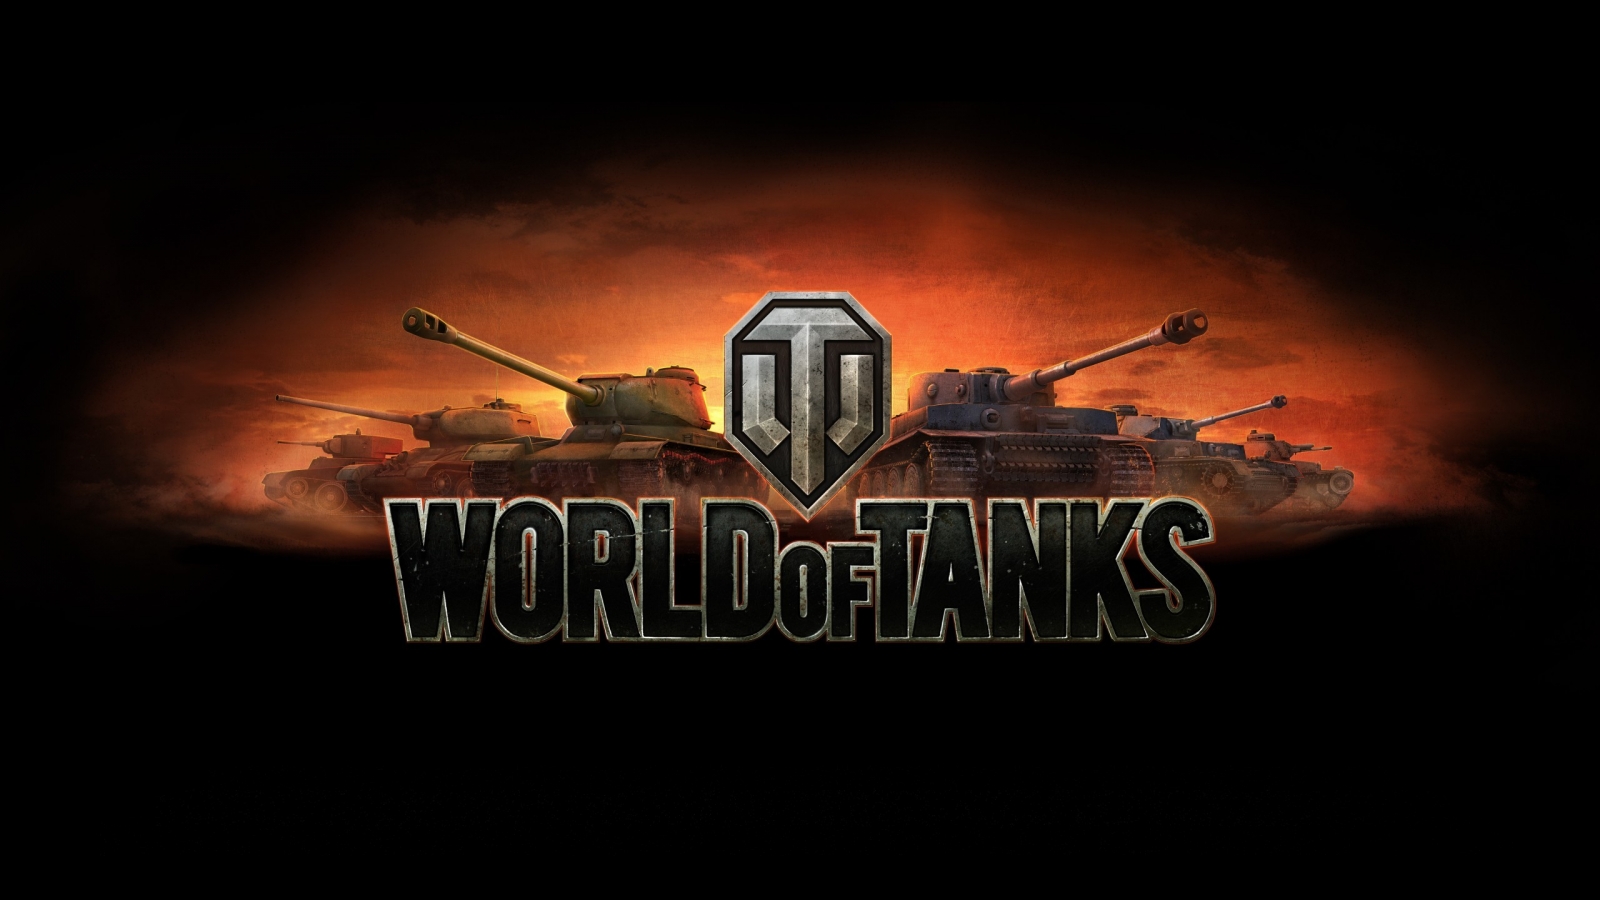 World of Tanks Poster for 1600 x 900 HDTV resolution